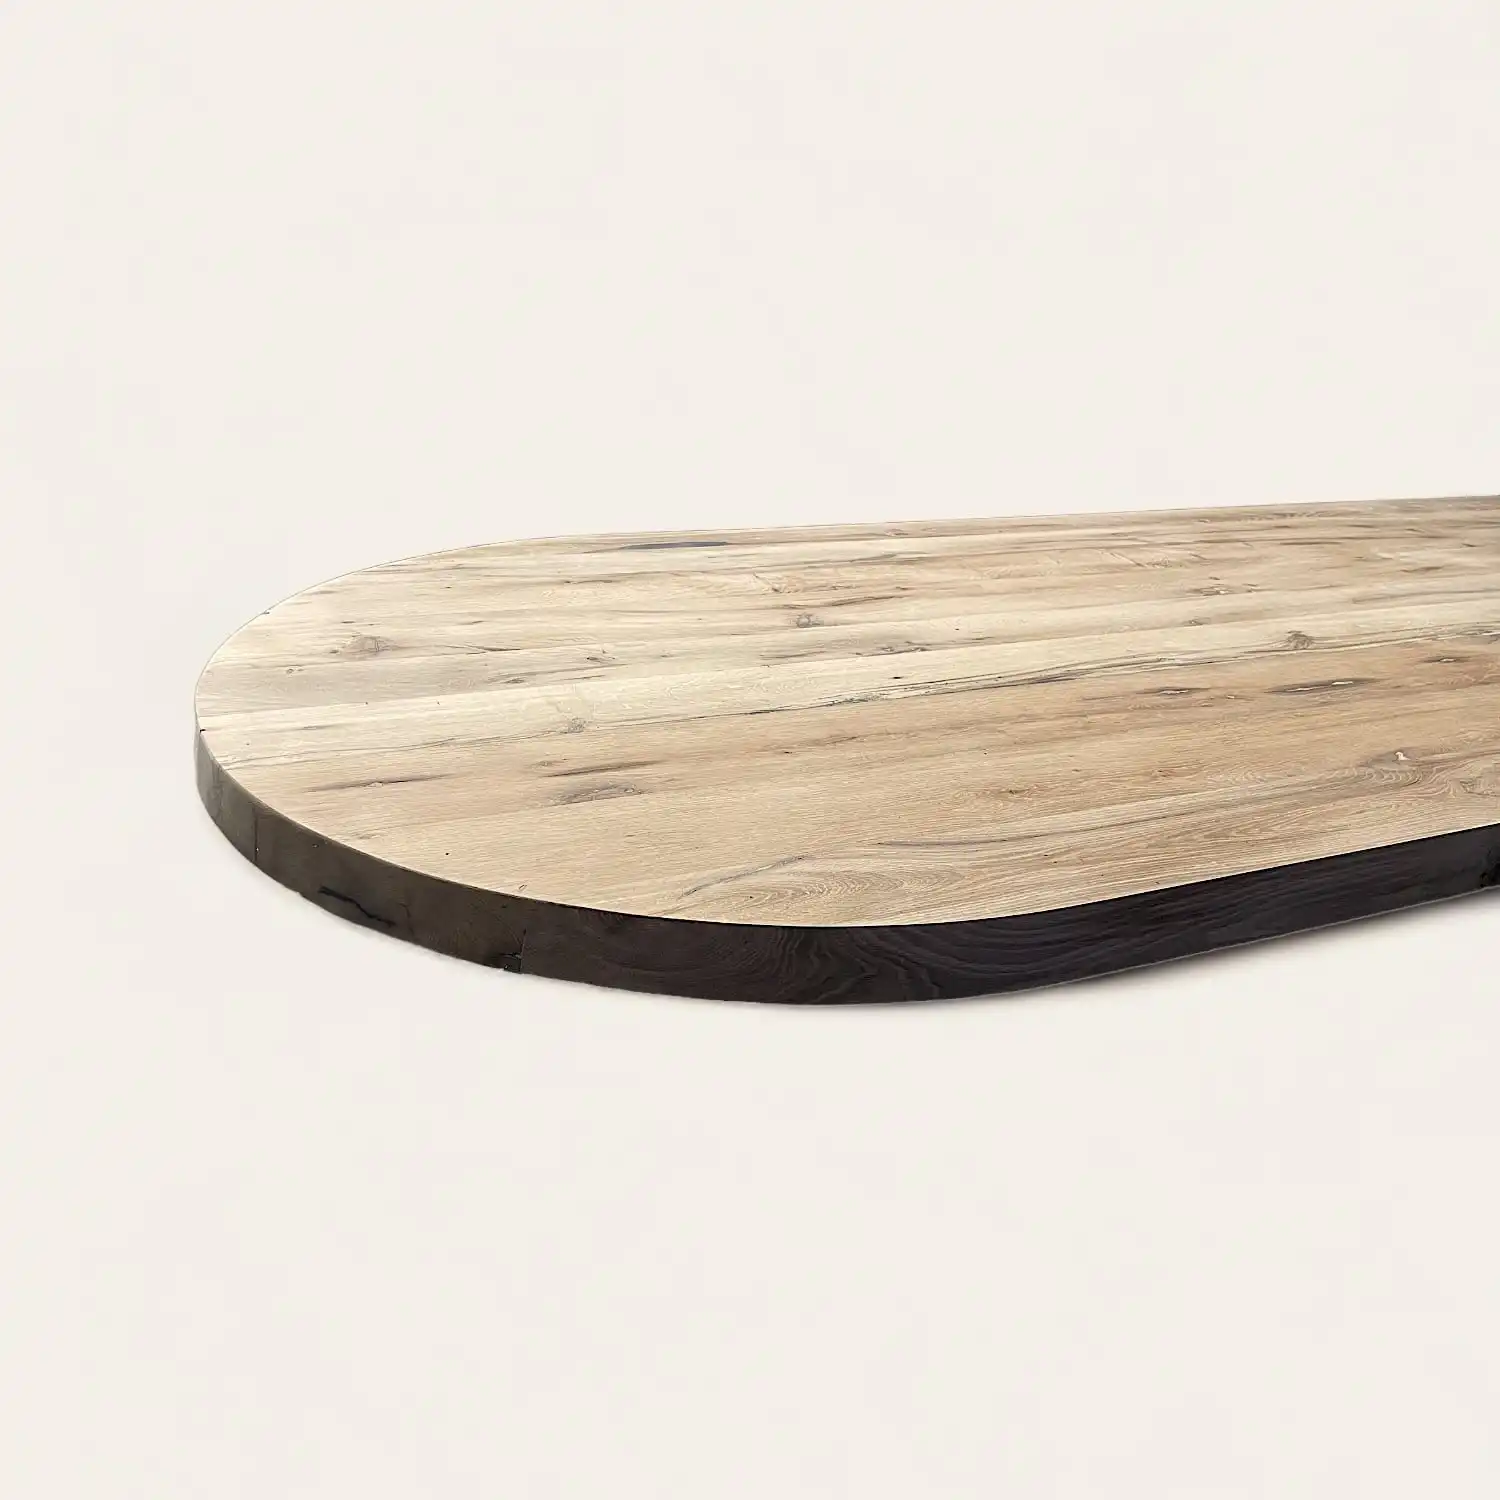  Une table ovale en bois rustique sur une surface blanche. 